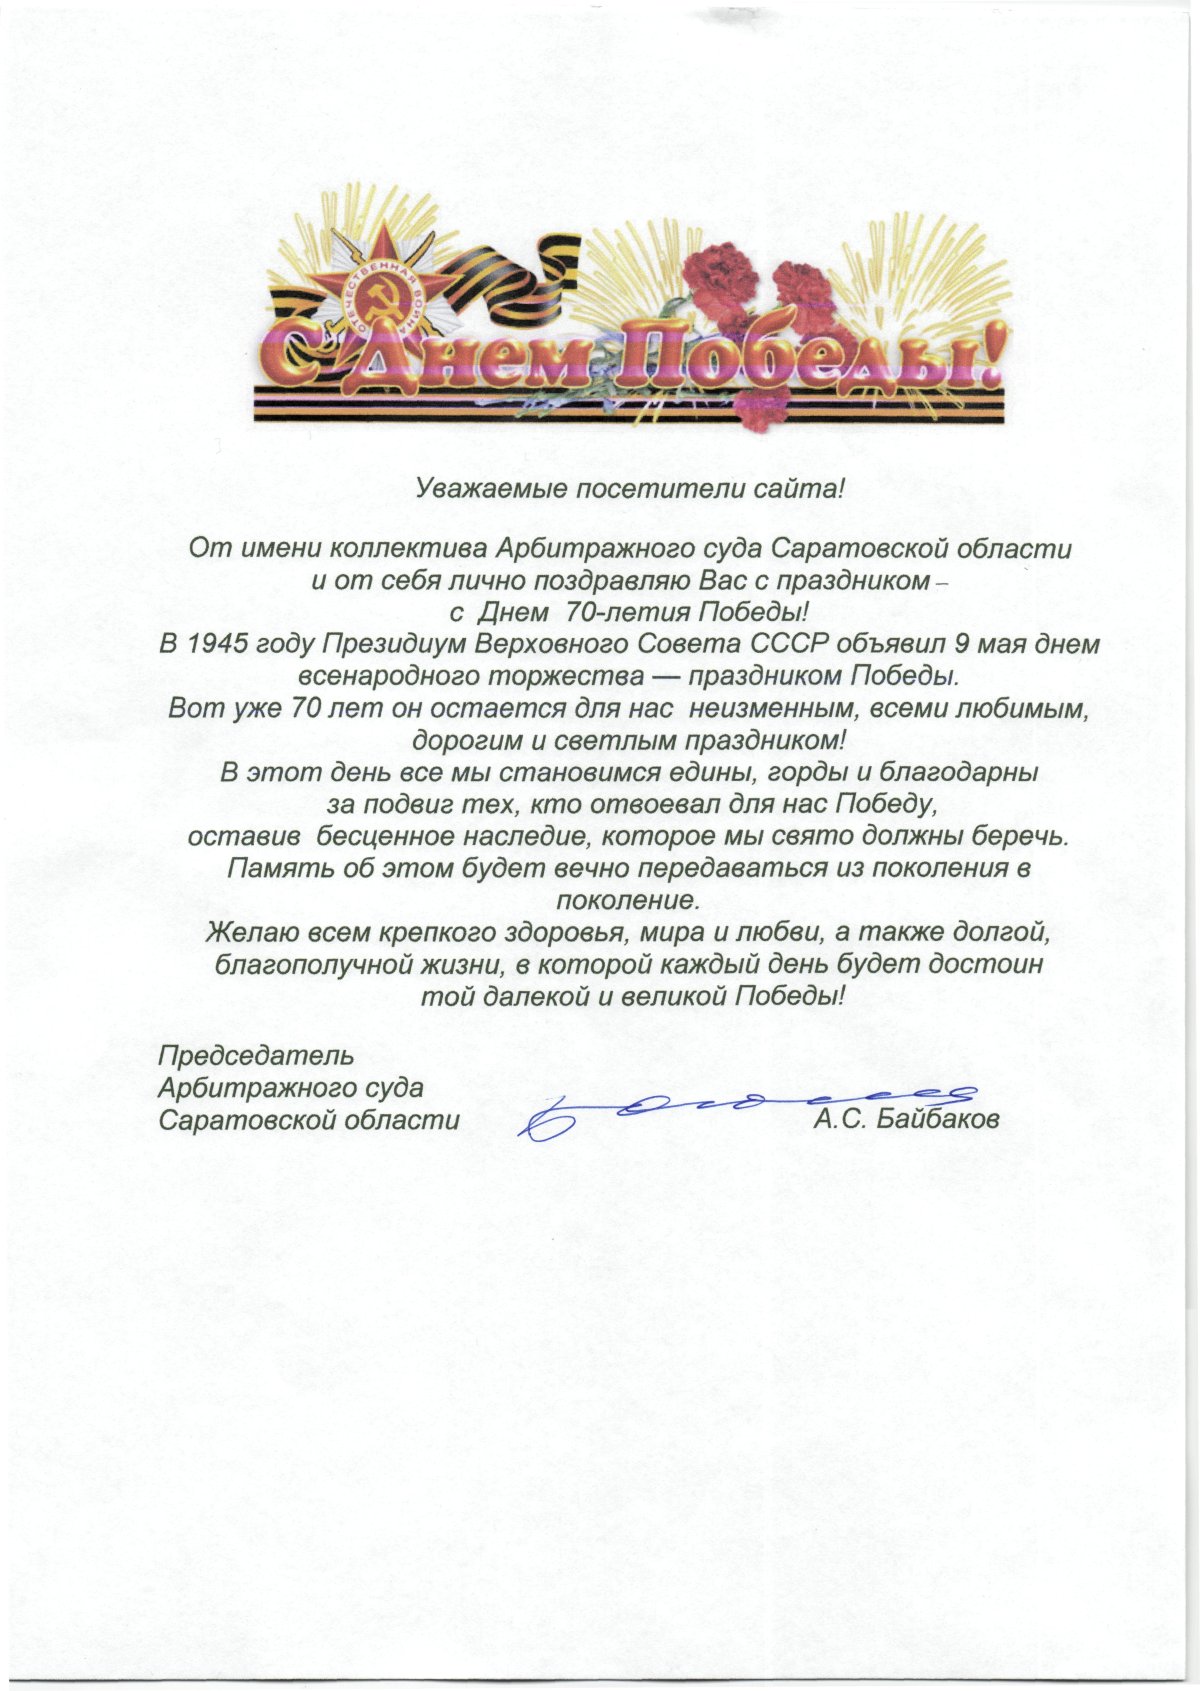 Сергей Собянин поздравил с назначением председателя Арбитражного суда Московского округа